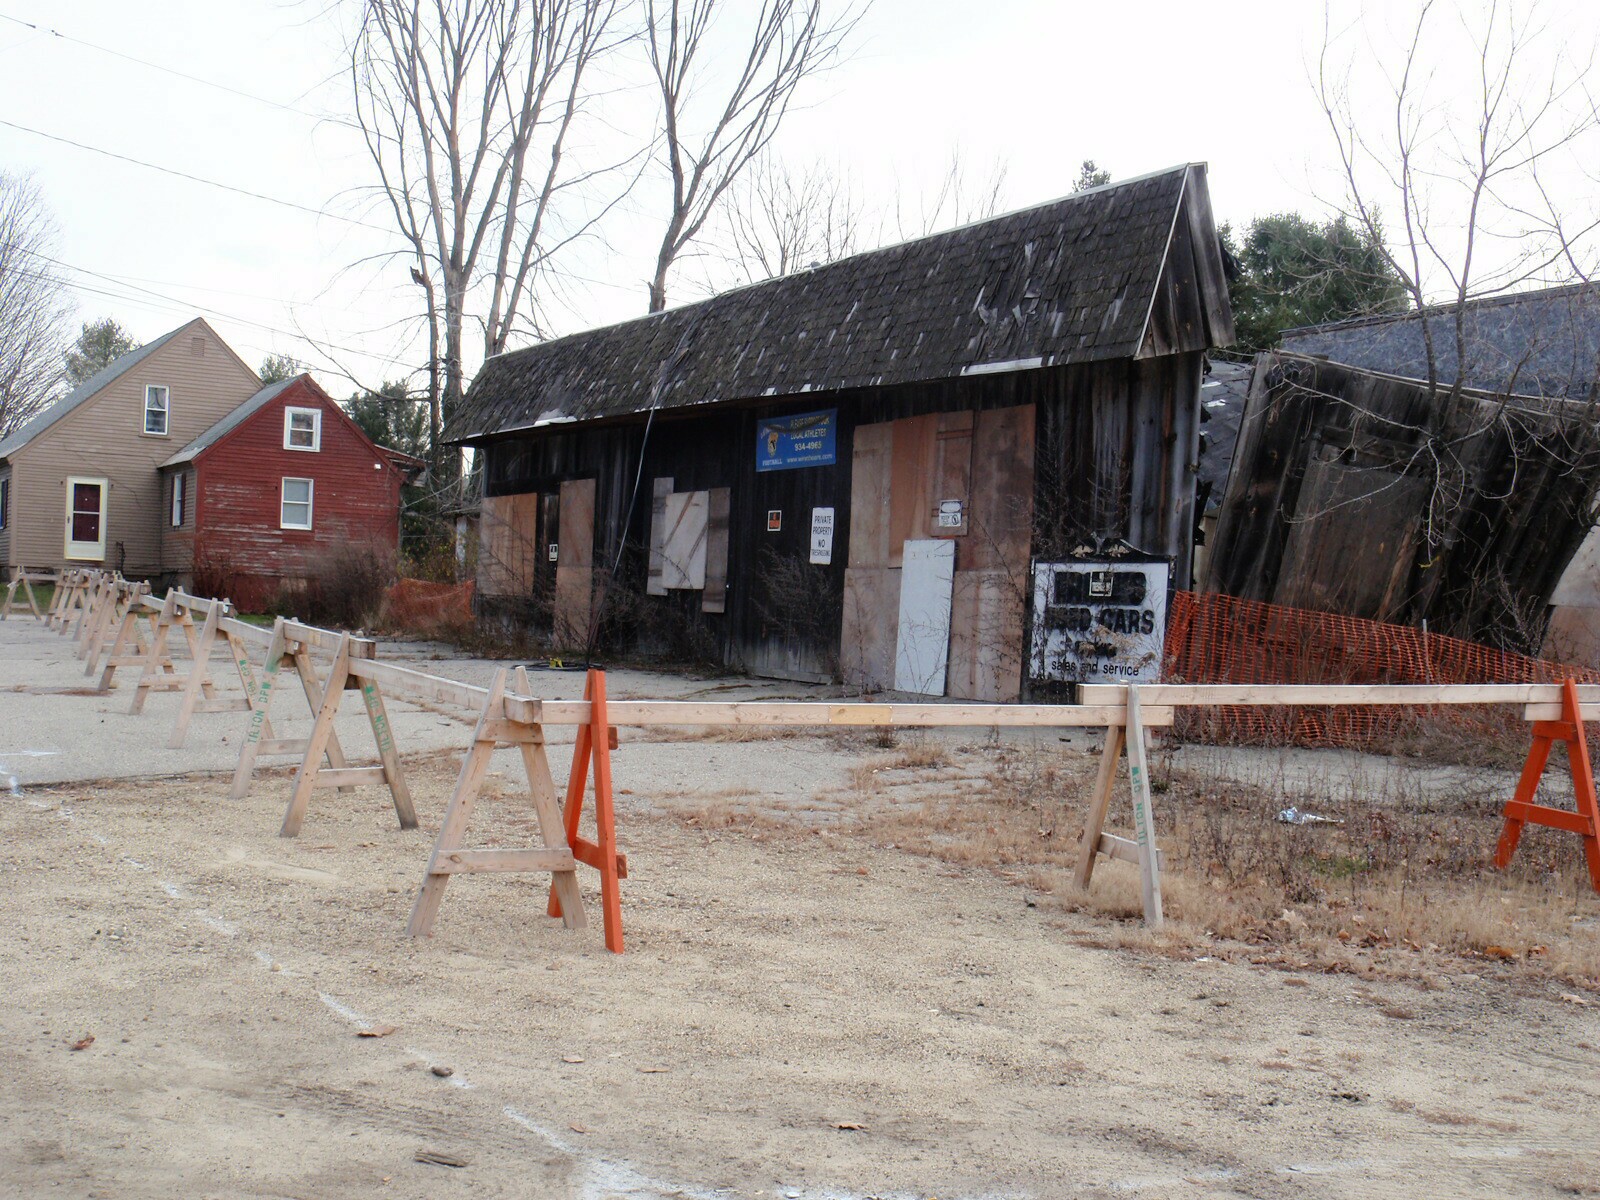 Ernie's Garage in 2009